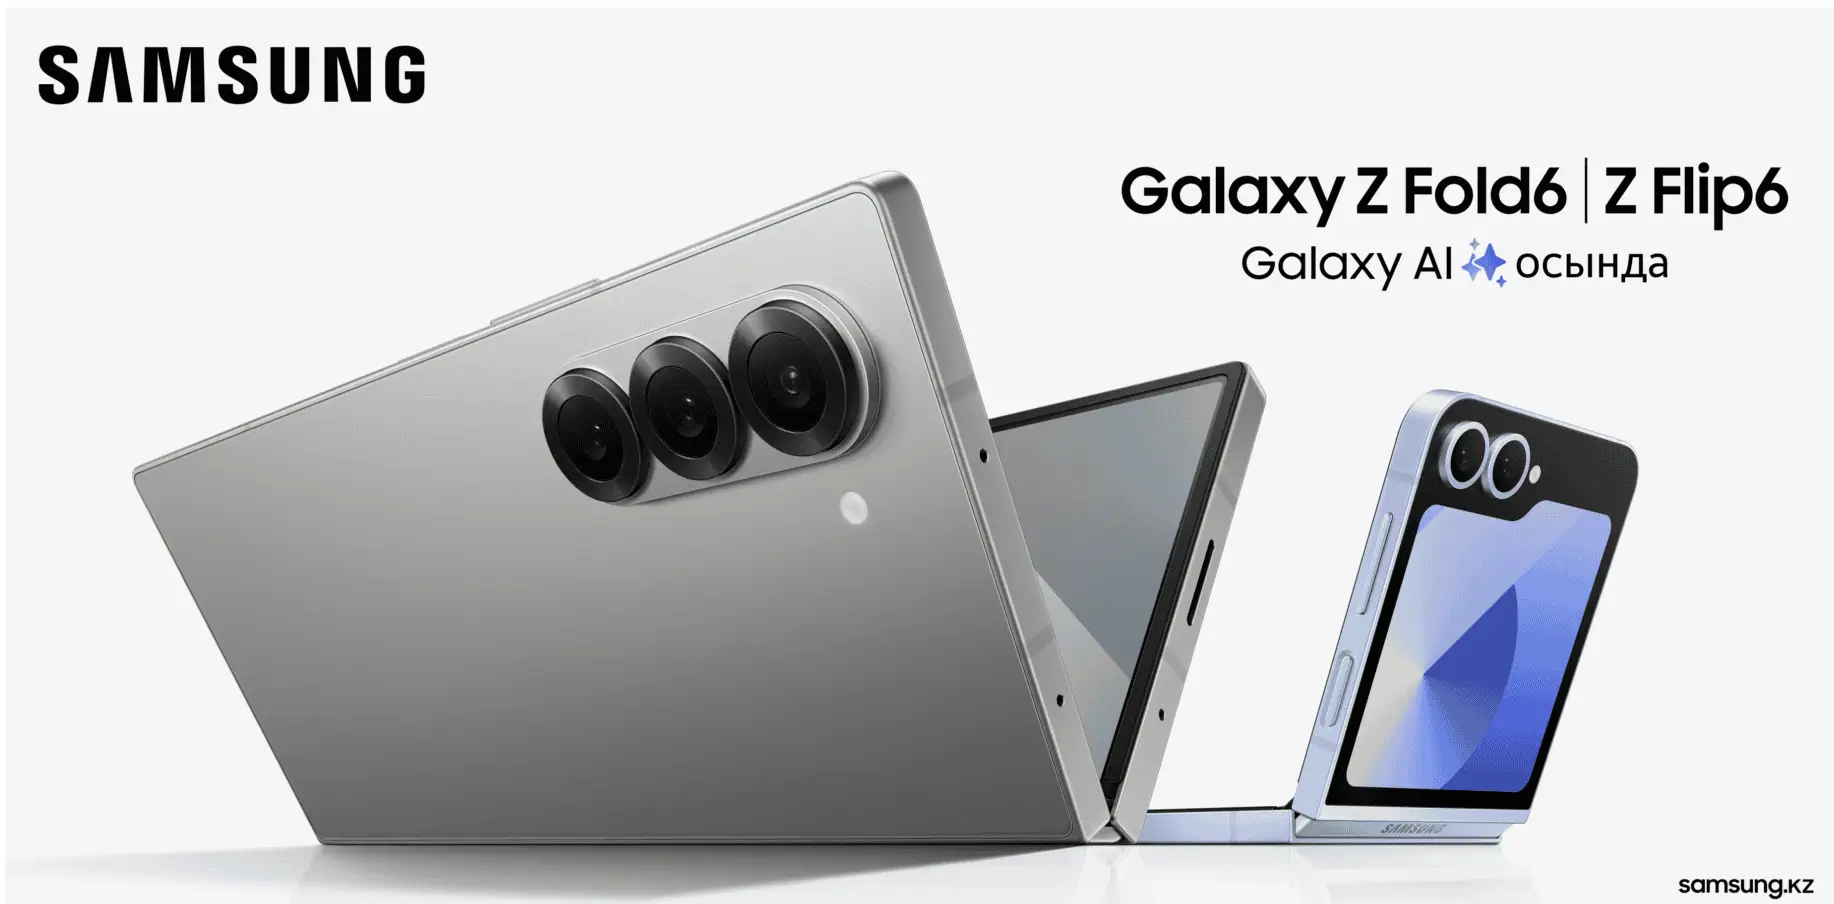 Samsung Galaxy Z Fold 6 und Flip 6: Offizieller Marketing-Bild-Unfall